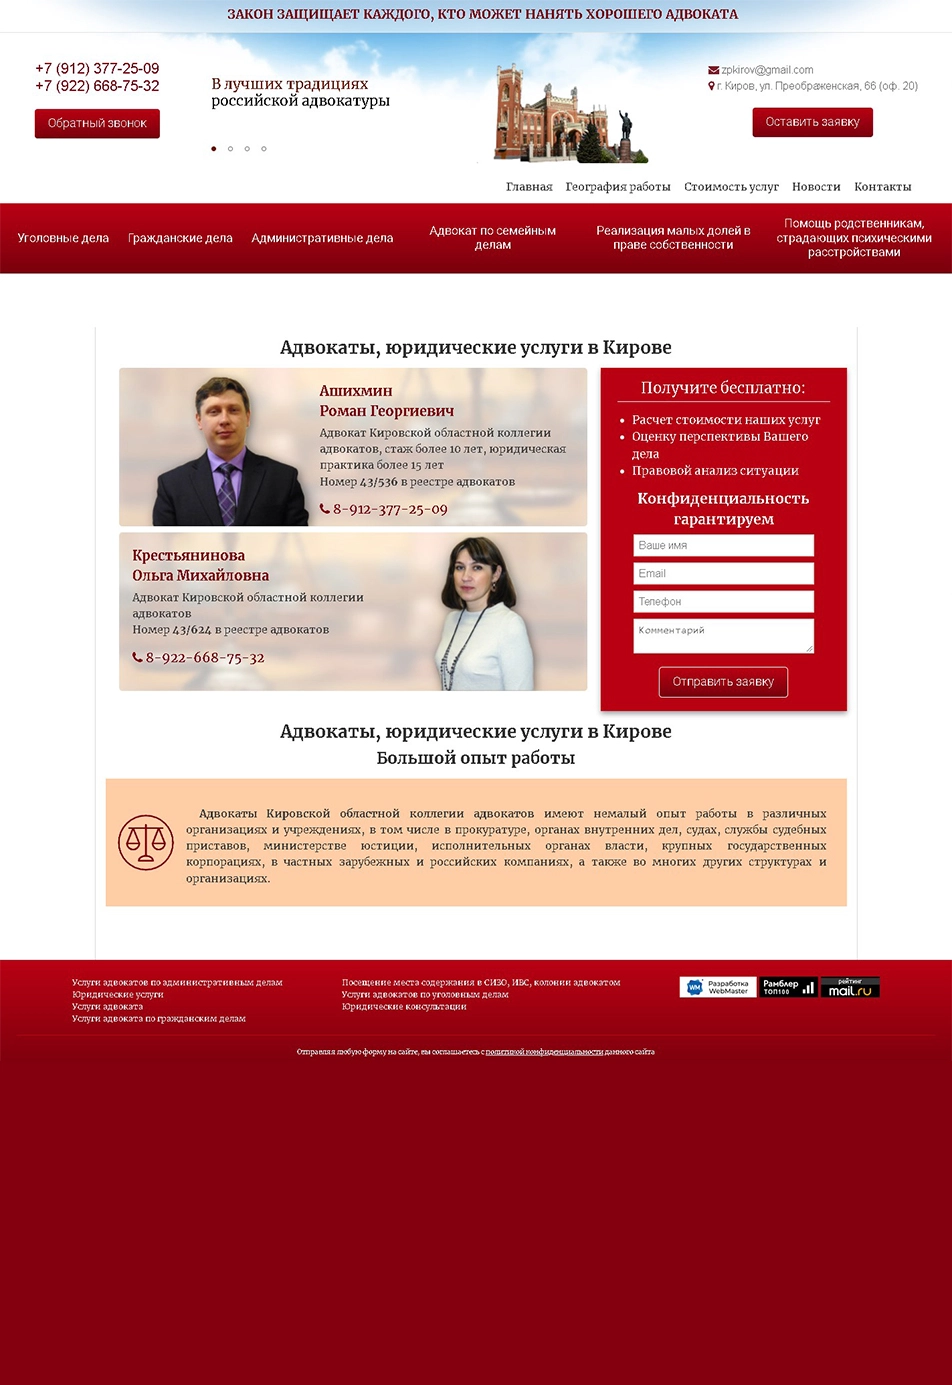 Сайт-Визитка - юридические услуги, адвокаты Ашихмин Р.Г. и Крестьянинова О.Ю.